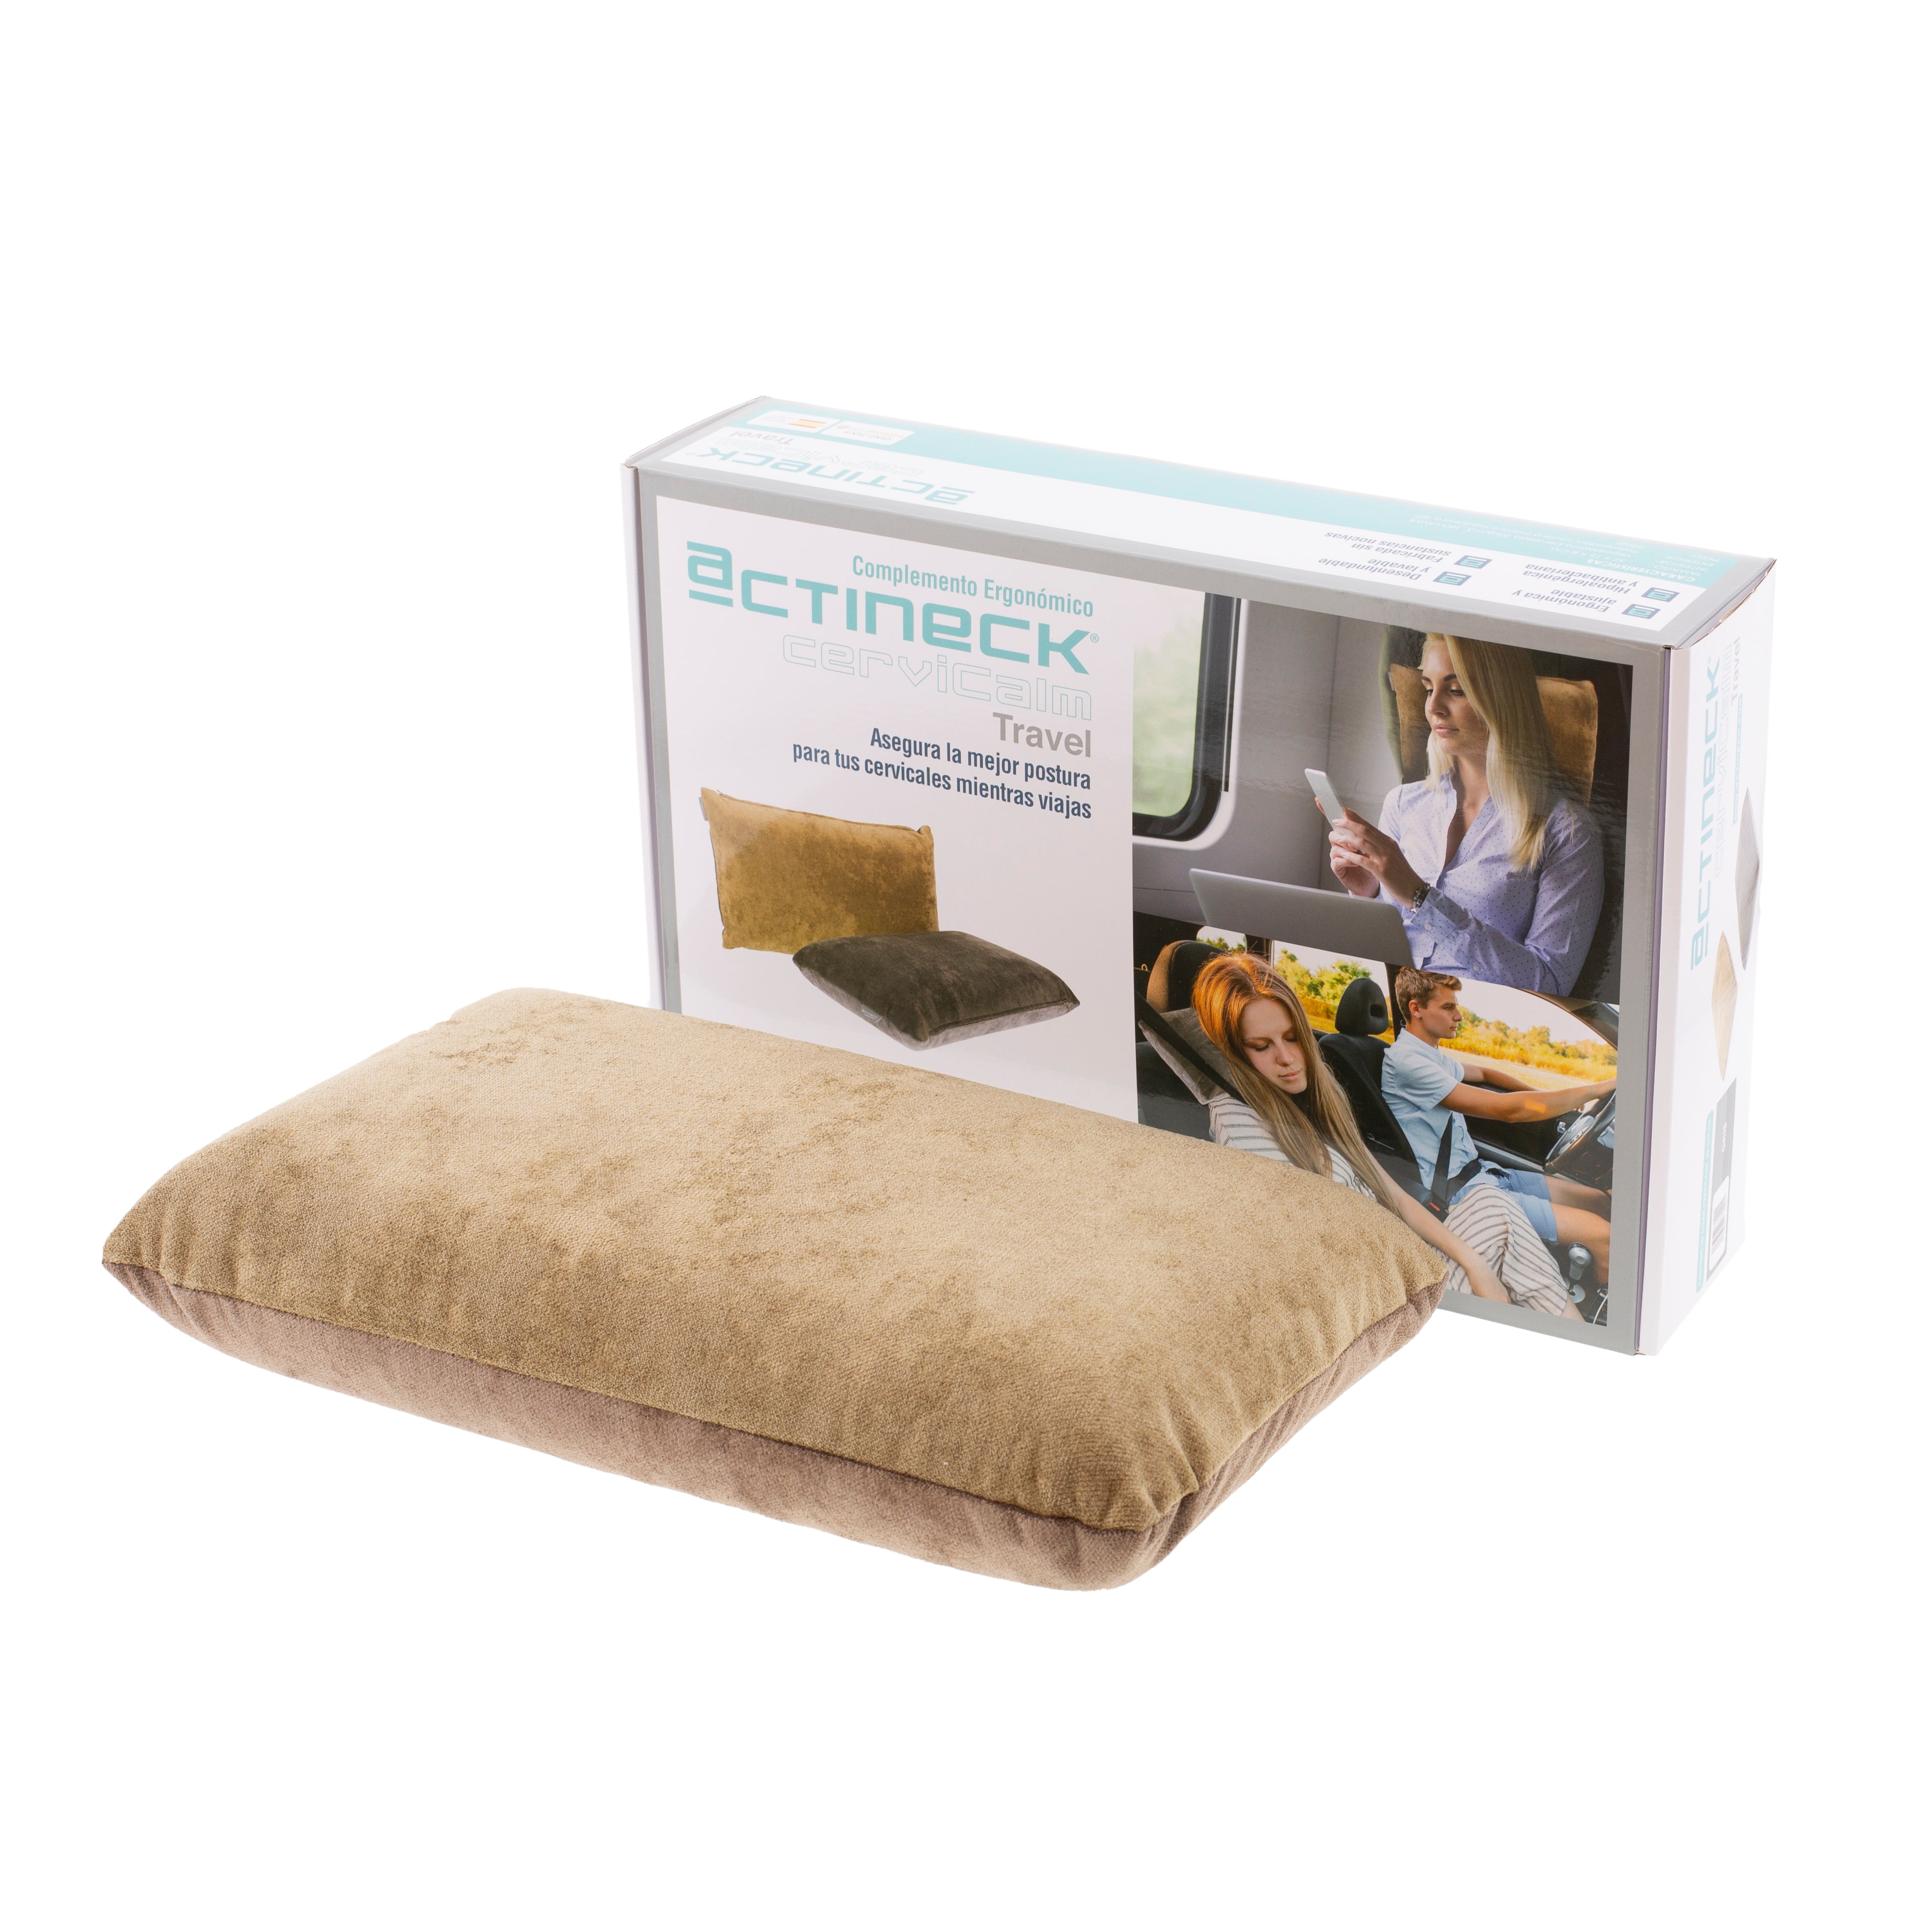 La cómoda almohada que necesitarás para tu siguiente viaje